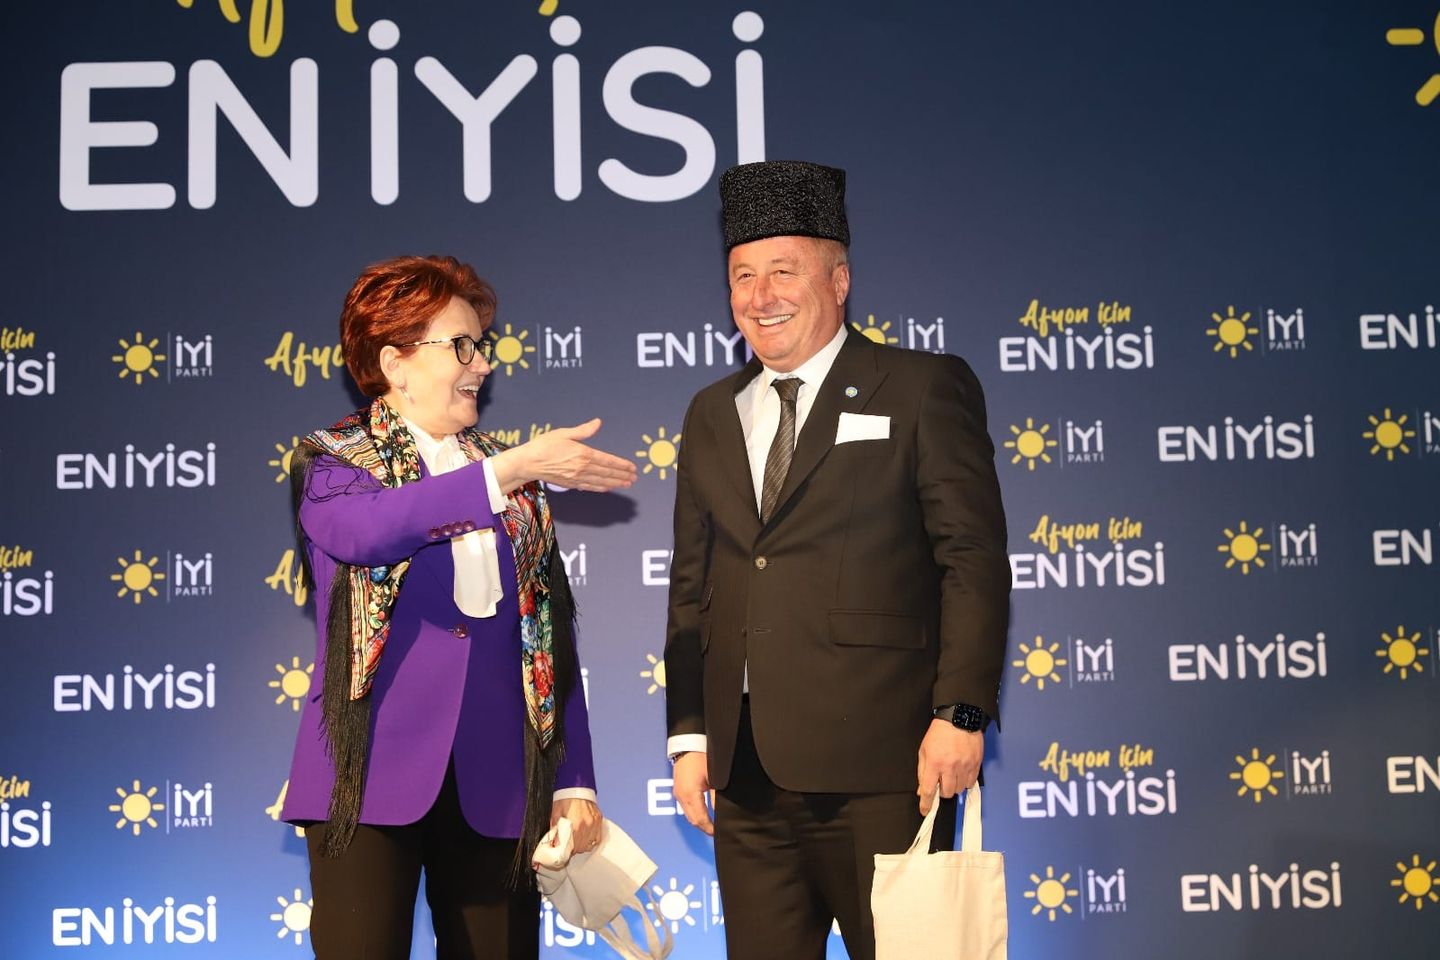 İyi Parti Milletvekili Hakan Şeref Olgun, Meral Akşener'in ziyaretiyle Afyonkarahisar'da halkla bir araya geldi.